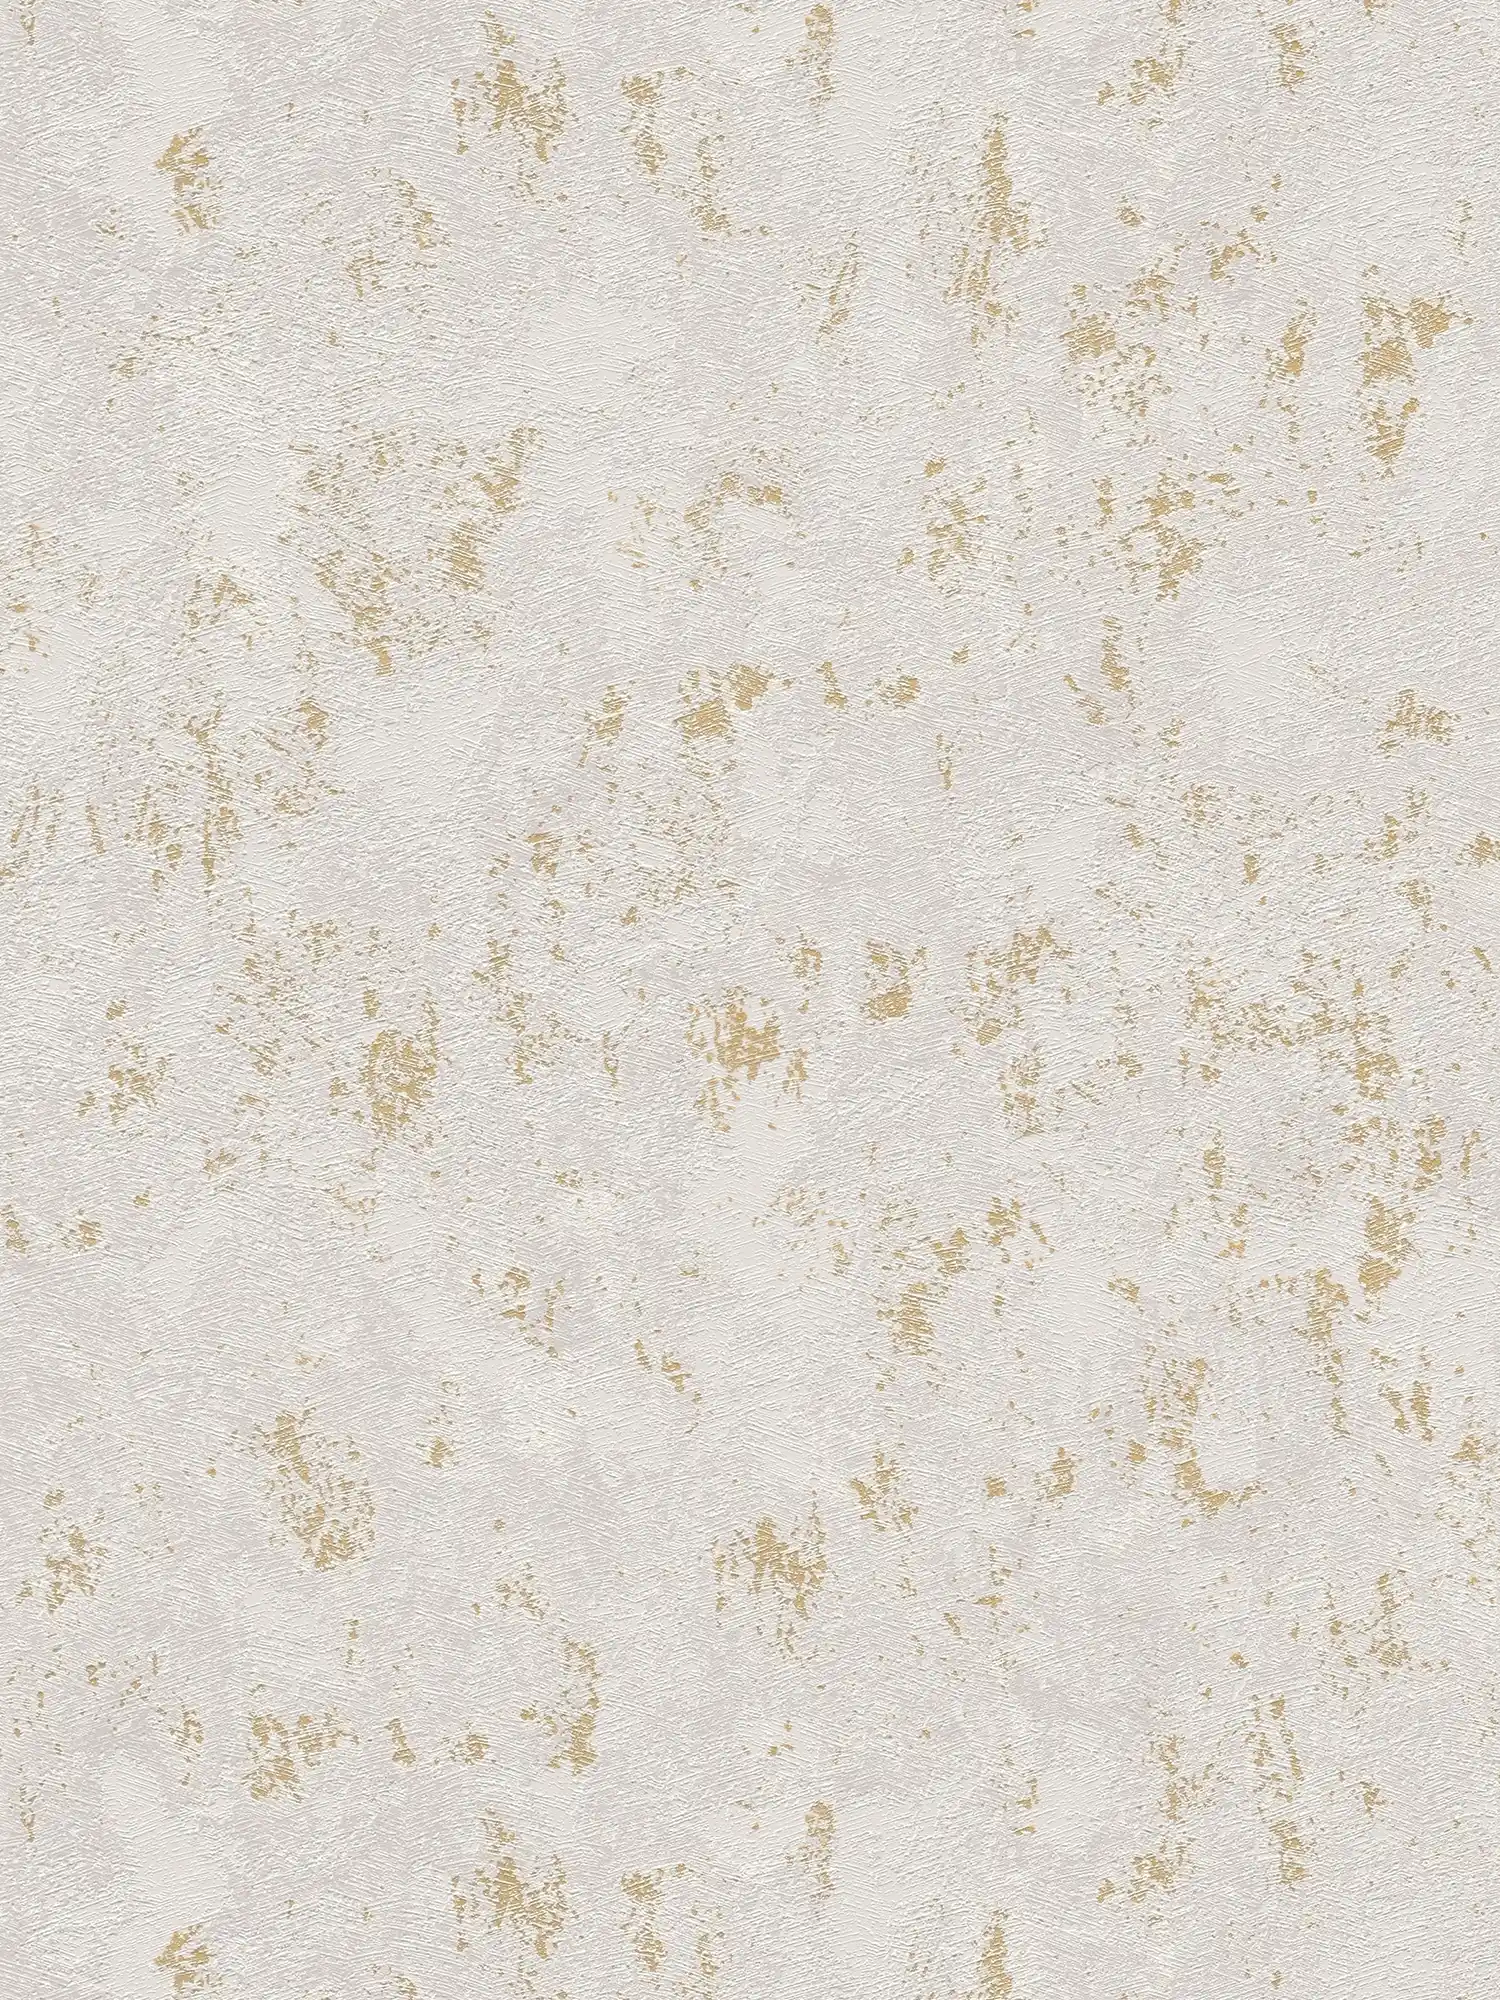 Vliestapete in Putzoptik mit goldenen Akzenten – Beige, Grau, Gold
